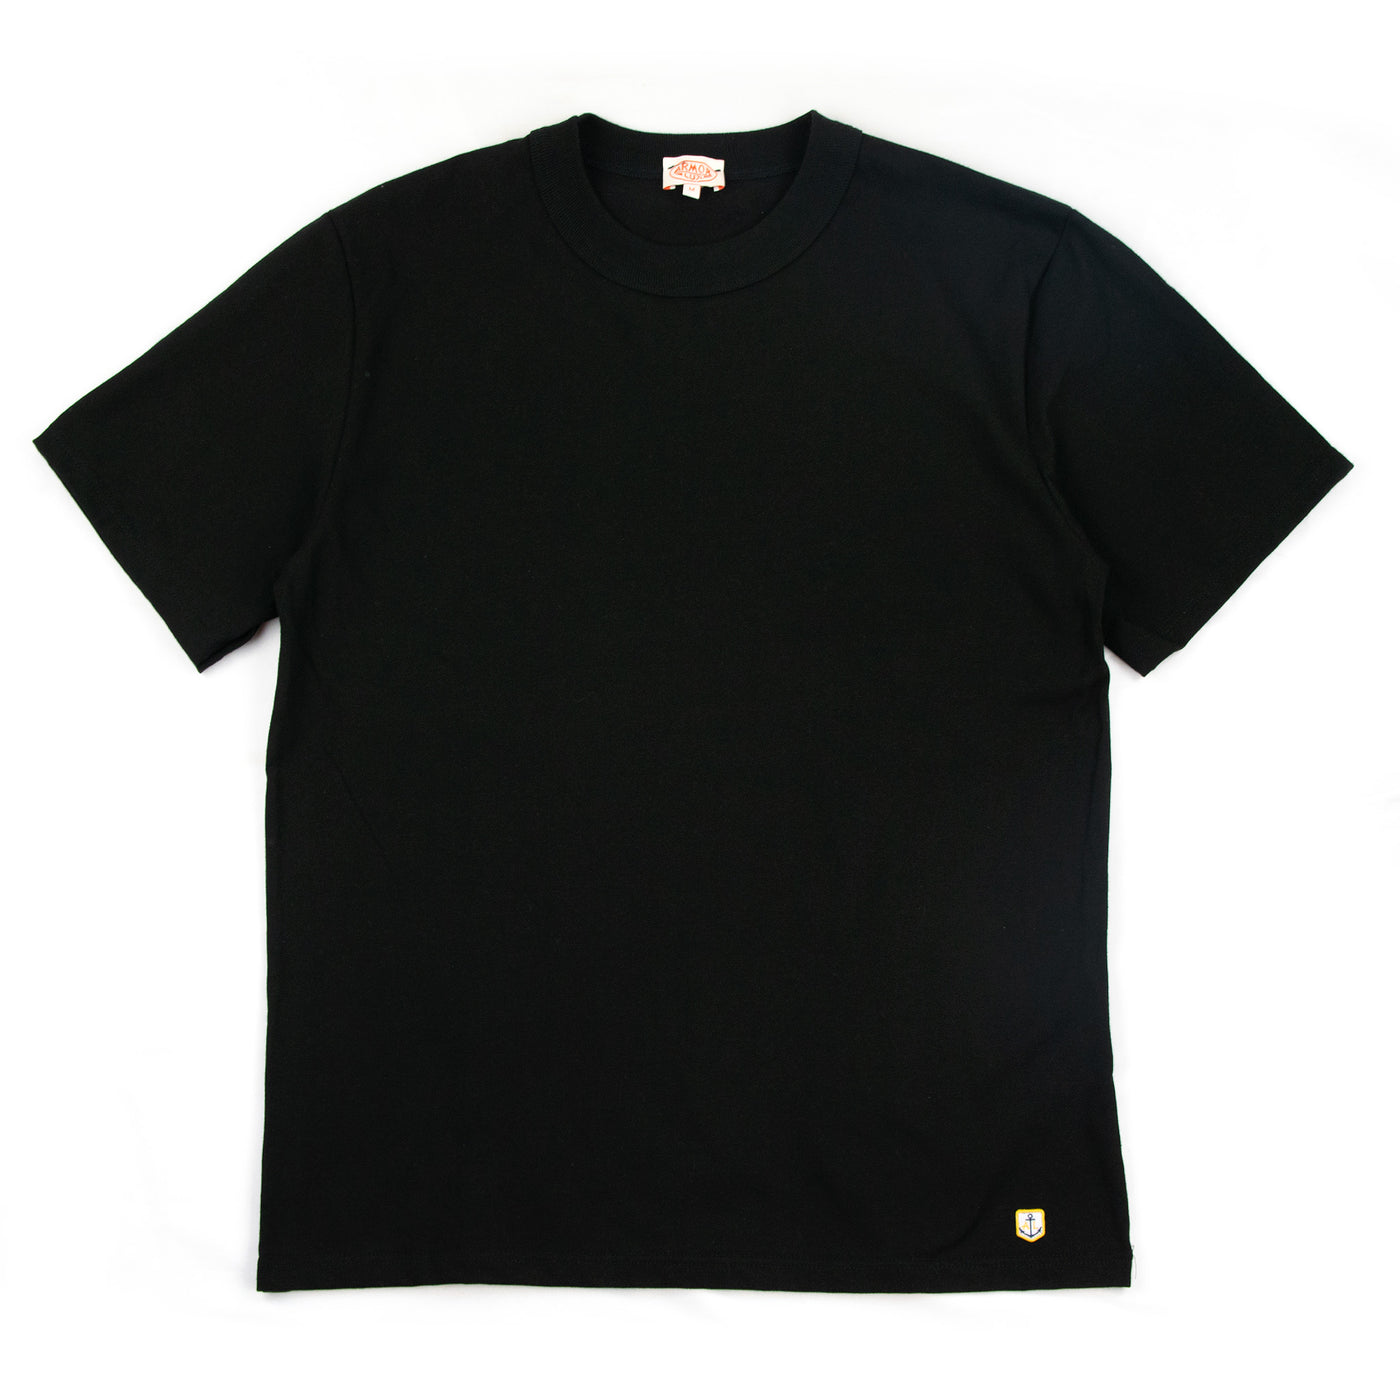 Armor-Lux Heritage 70990 Callac T-Shirt Noir Black FRONT 